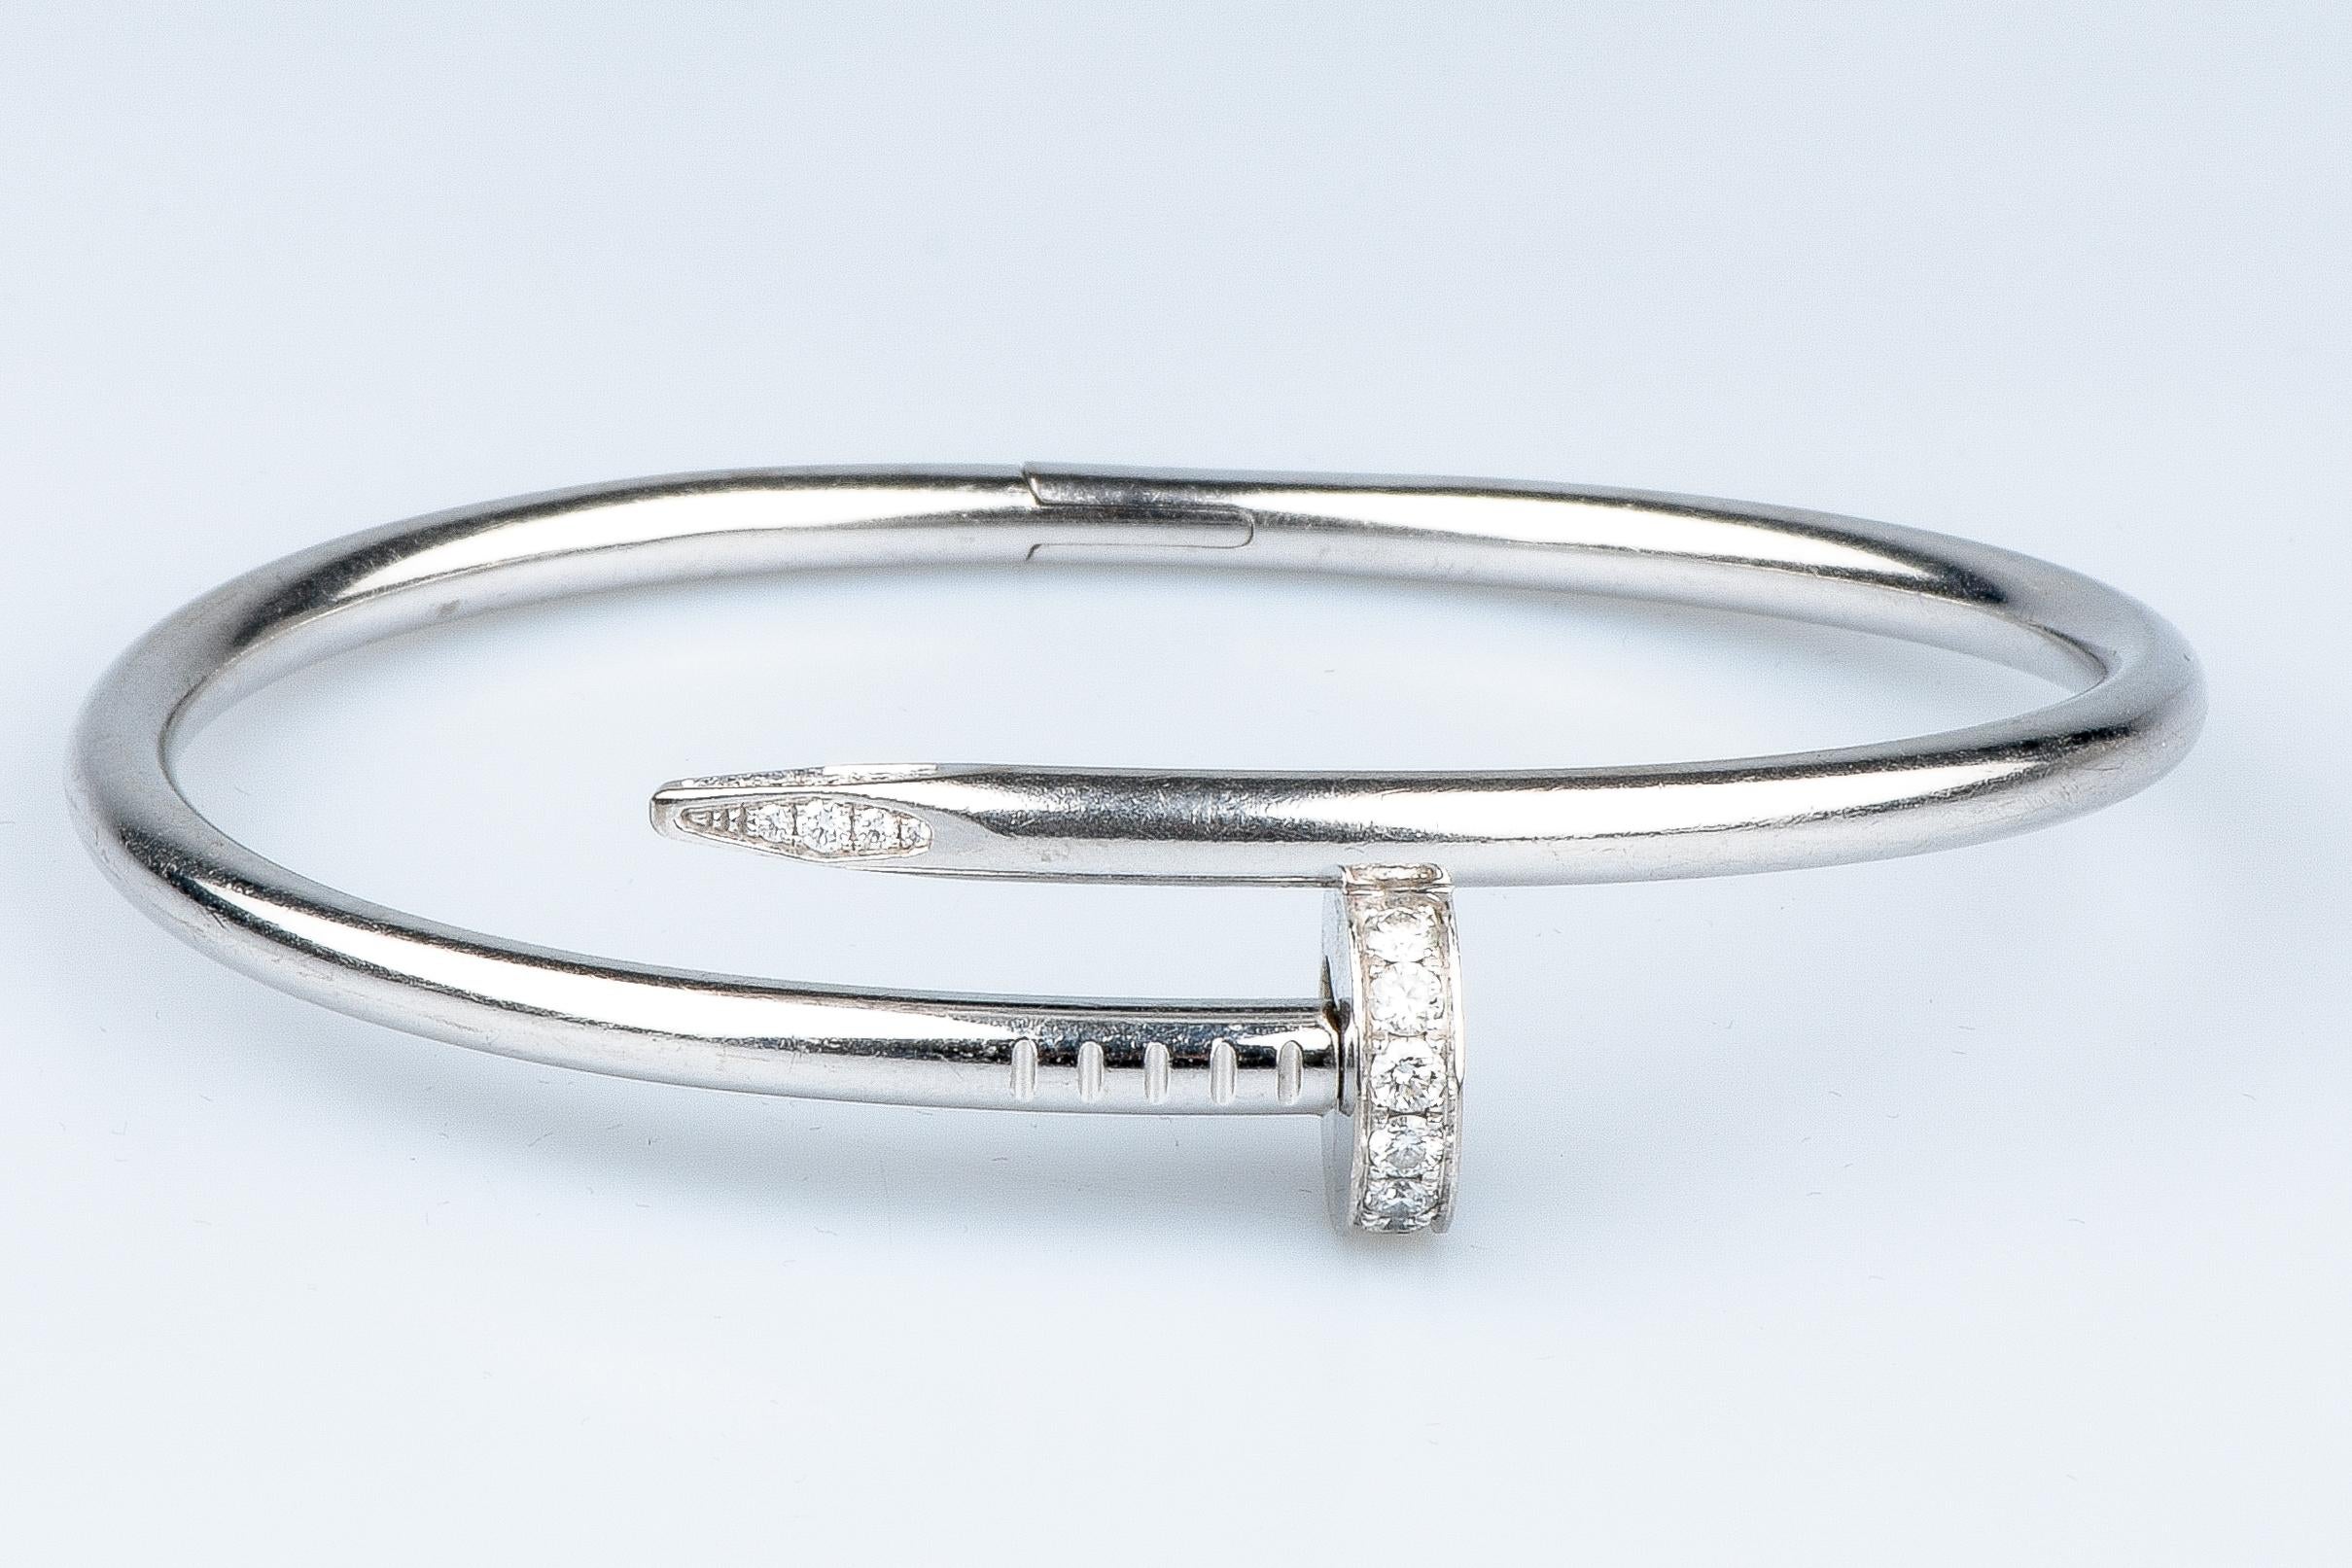 Brilliant Cut Cartier Juste un Clou Bracelet certified 0.58 carat brillant cut diamonds